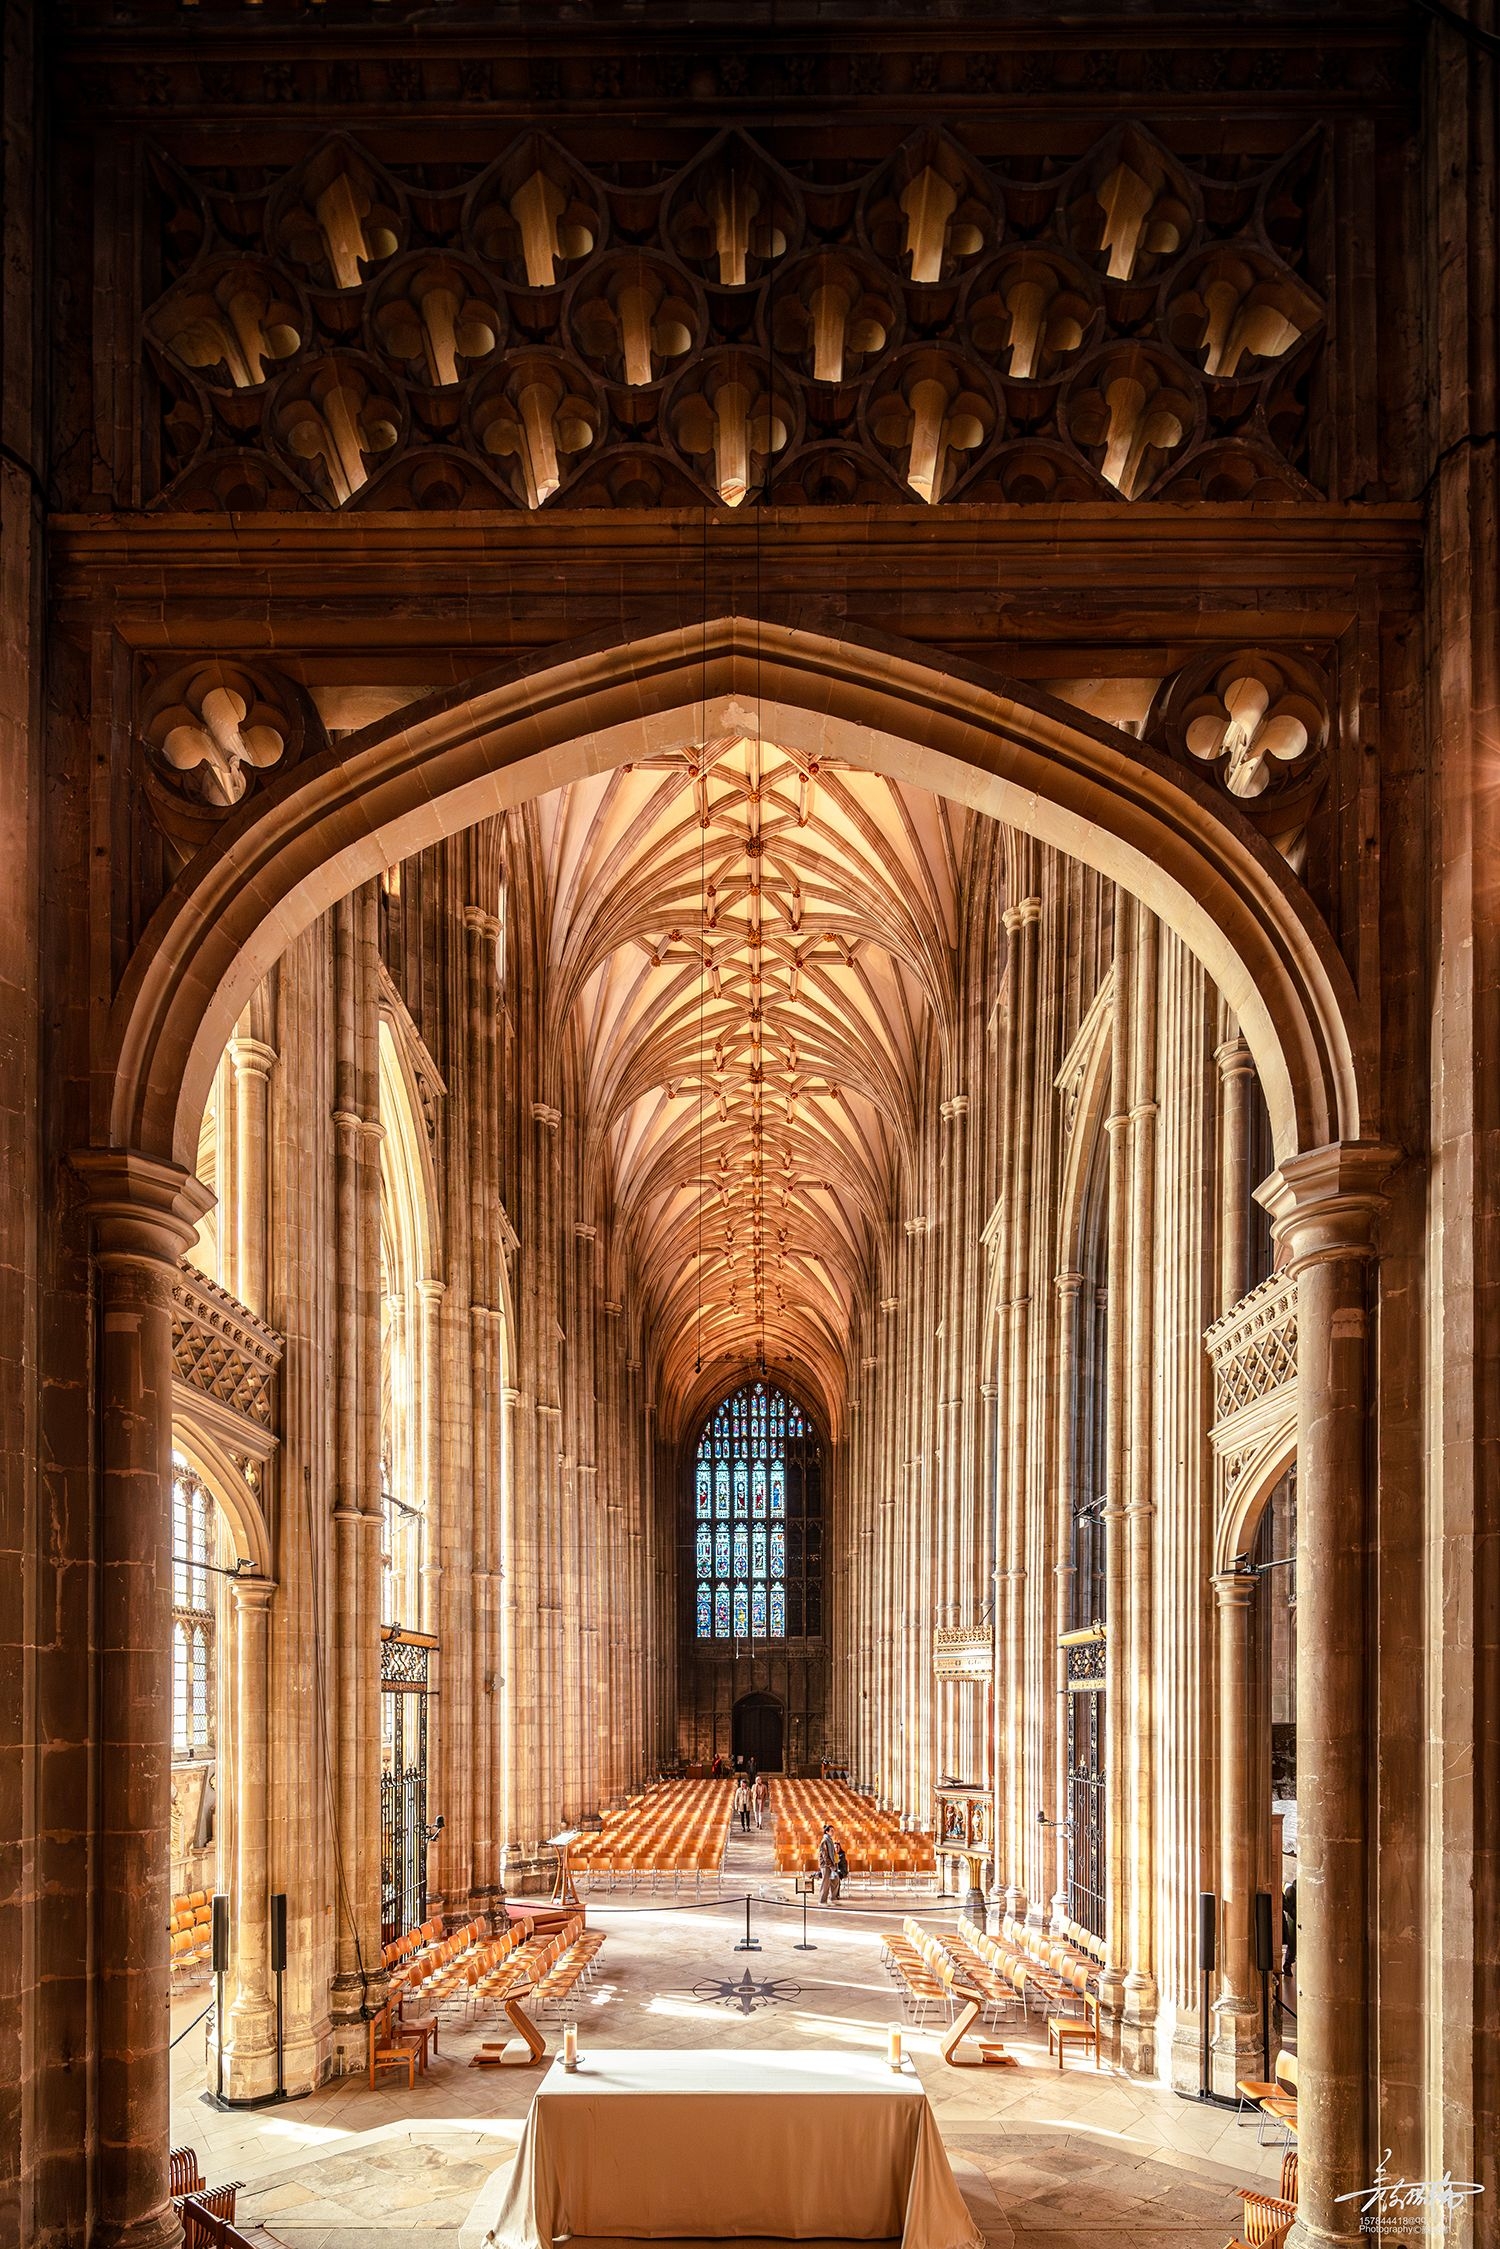 始建于公元597年的坎特伯雷大教堂(Canterbury Cathedral)，是英国最古老的教堂，